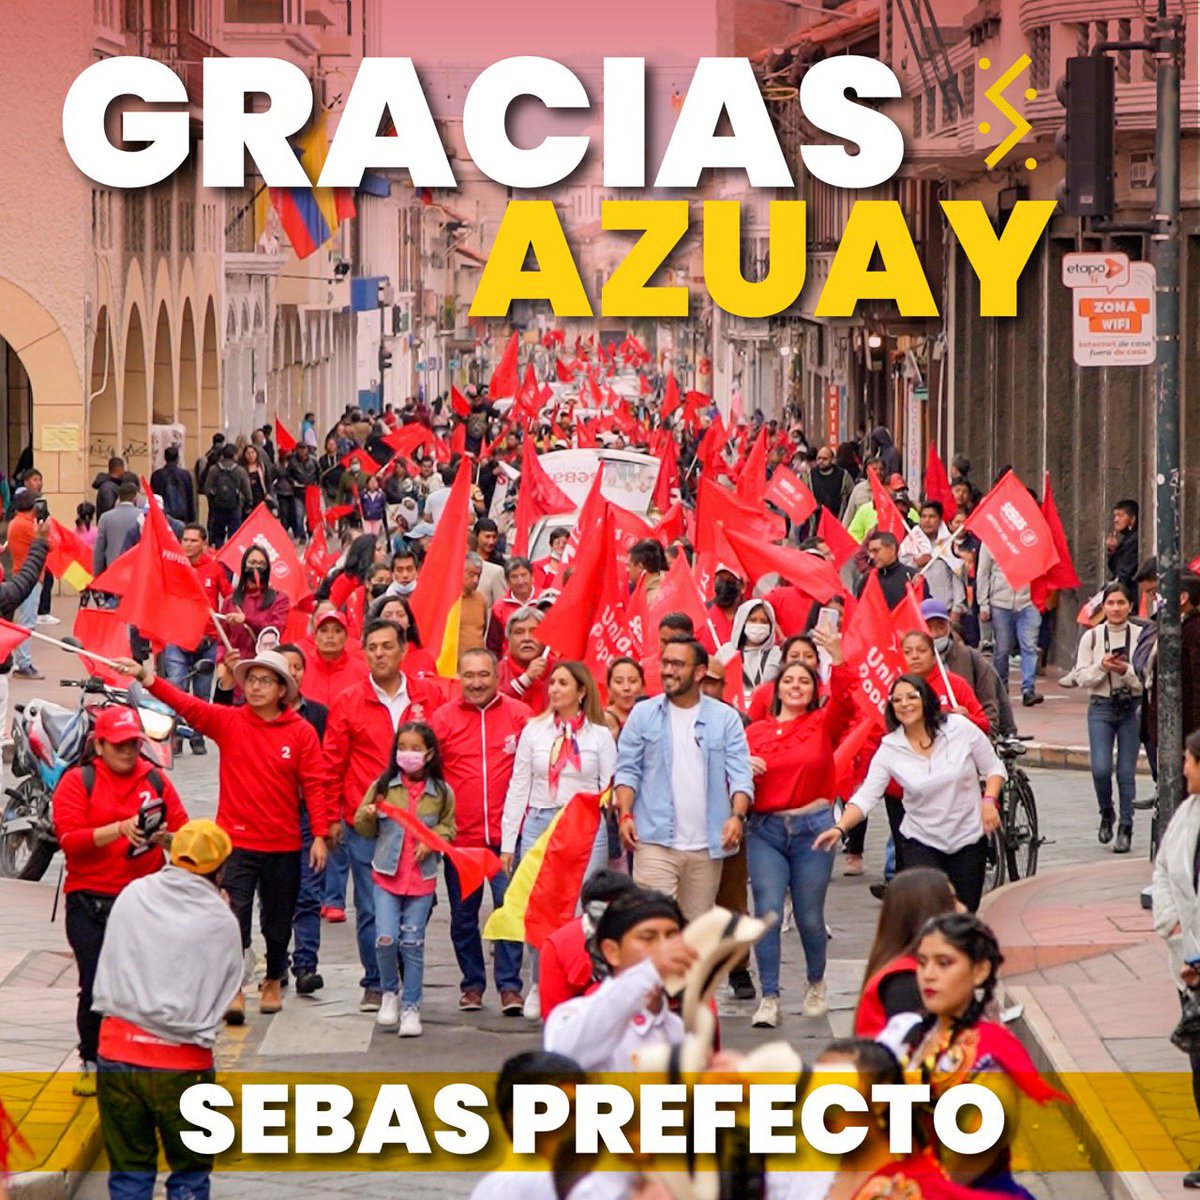 Así iniciamos nuestra campaña!Gracias x el apoyo, seguimos recorriendo el #Azuay, compartiendo nuestras propuestas, pues estamos seguros que #SiHayOpción para nuestra amada provincia. 

#SúbeteALa2 #Cuenca #Elecciones2023Ec